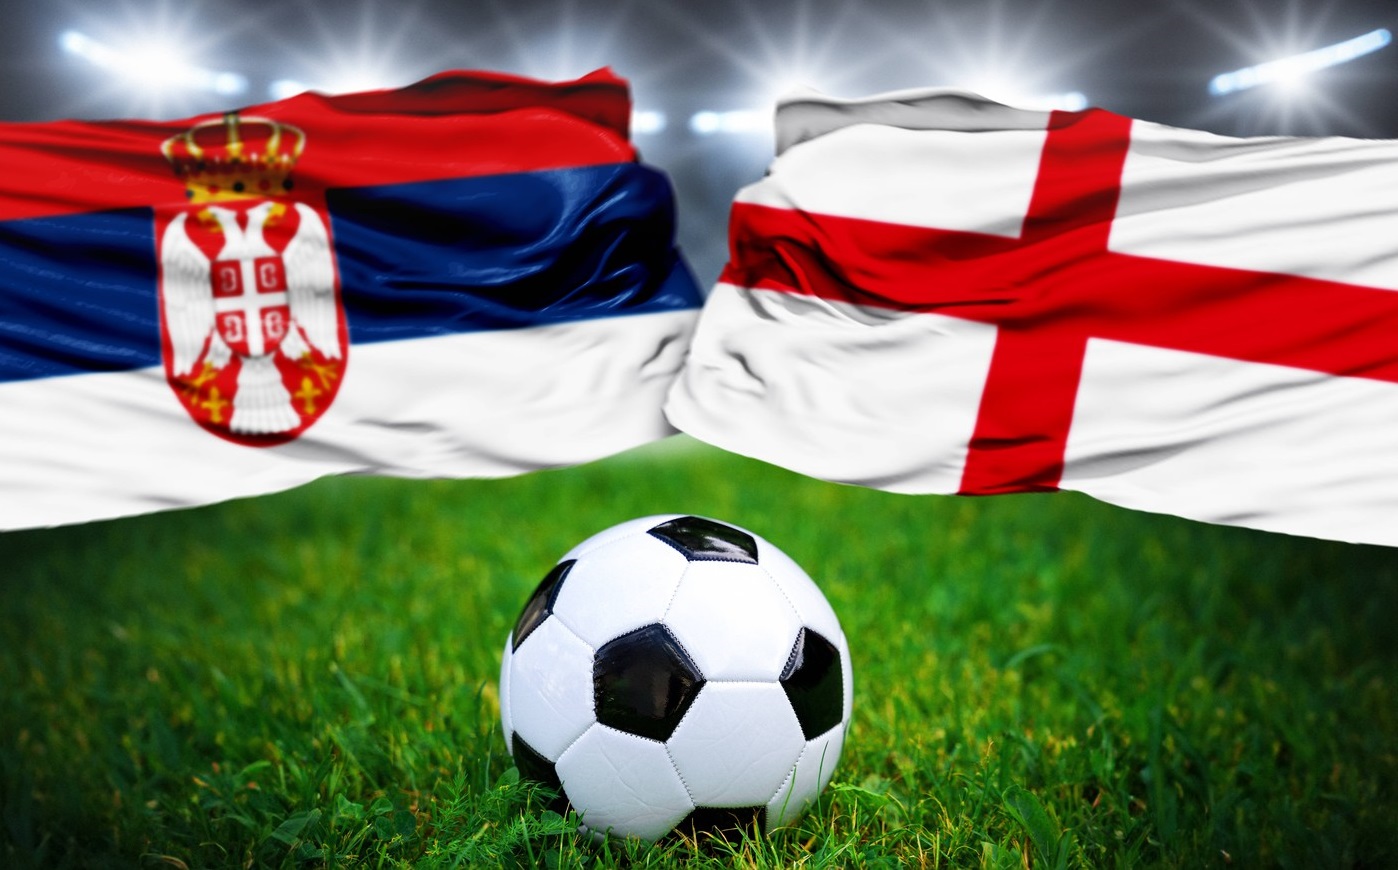 Serbia - Anglia, 22:00, LIVE TEXT pe digisport.ro. Primul meci direct dintre cele două țări. ECHIPELE